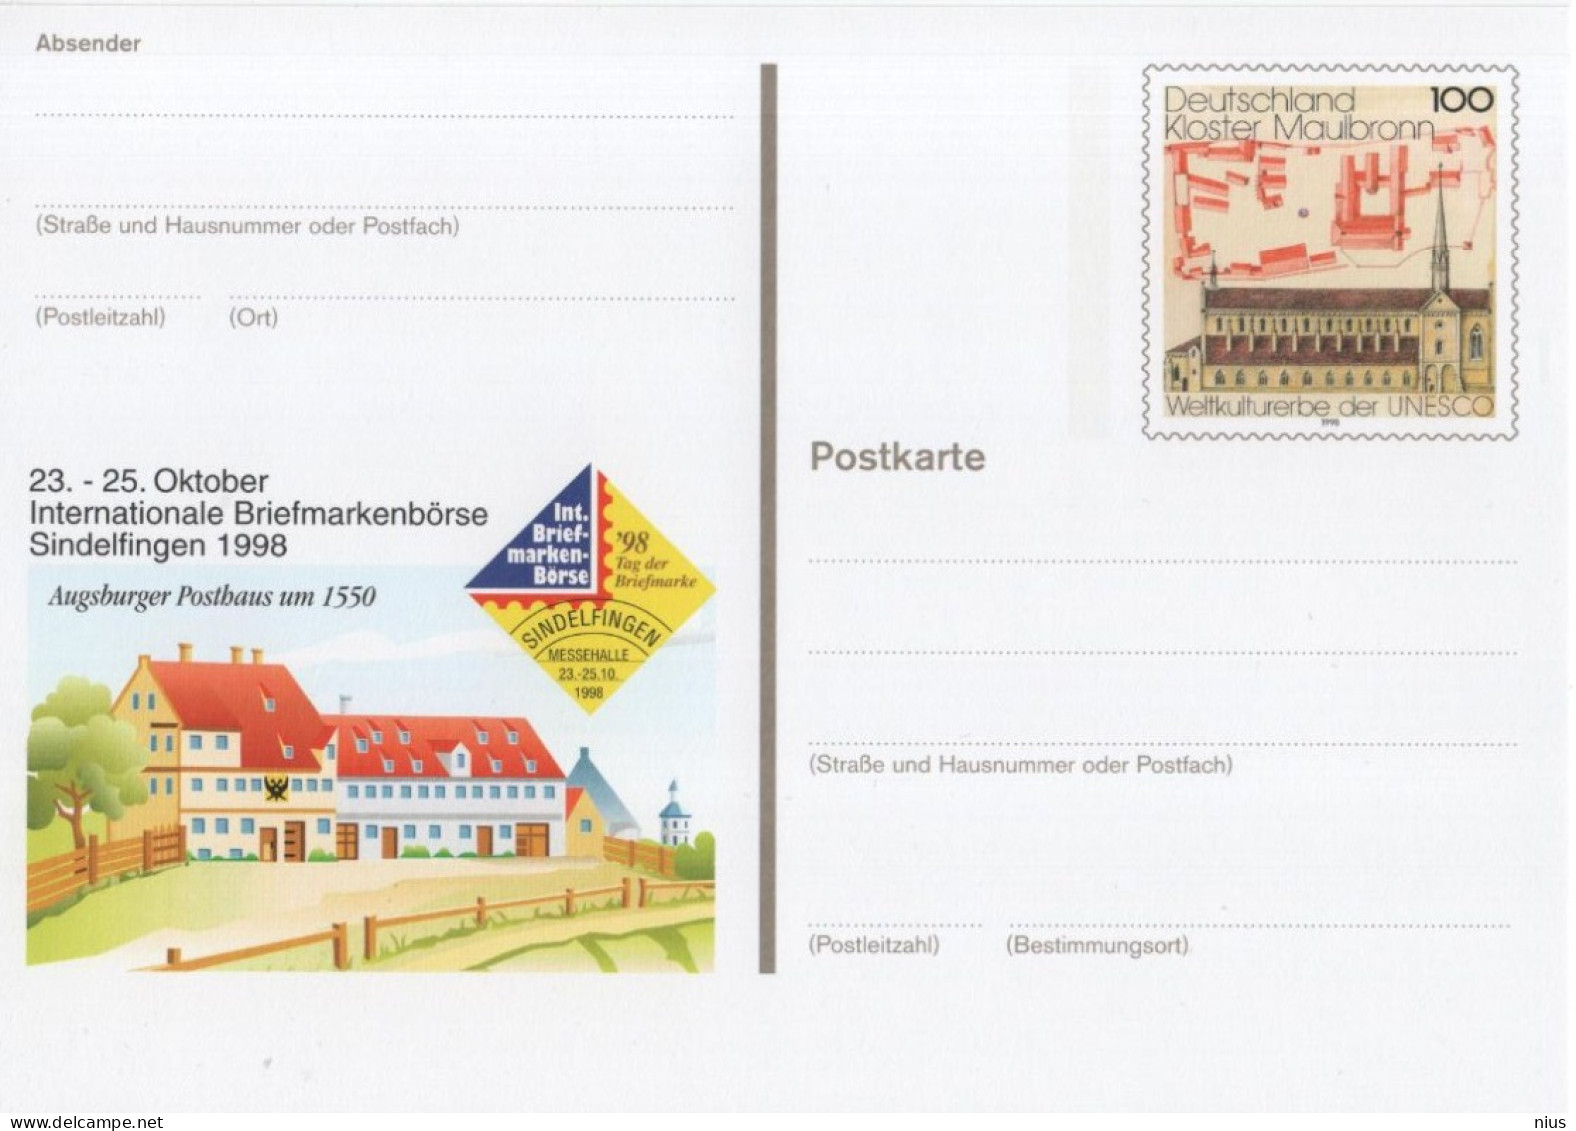 Germany Deutschland 1998 Kloster Maulbronn, Briefmarkenborse Sindelfingen - Postkarten - Ungebraucht